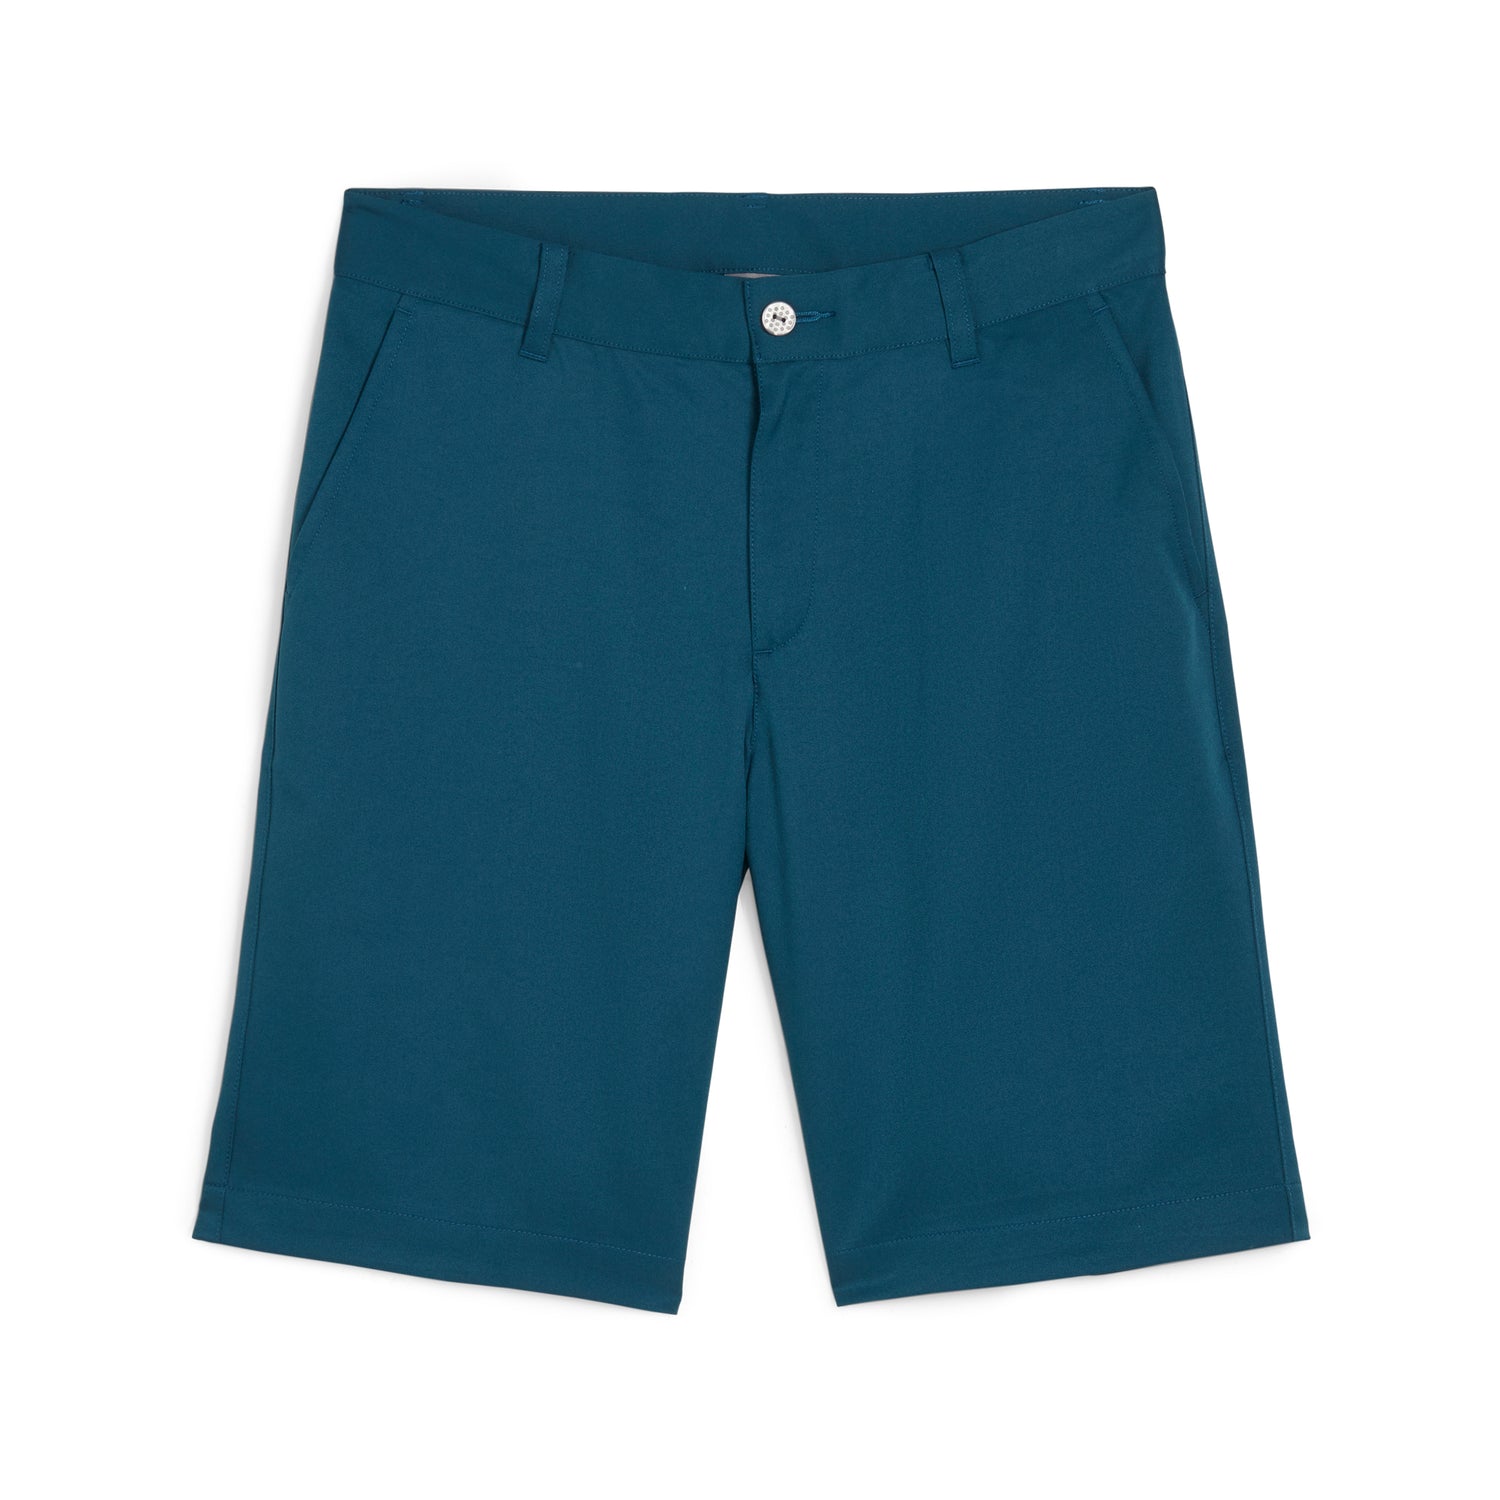 Boys Clothing - Shorts